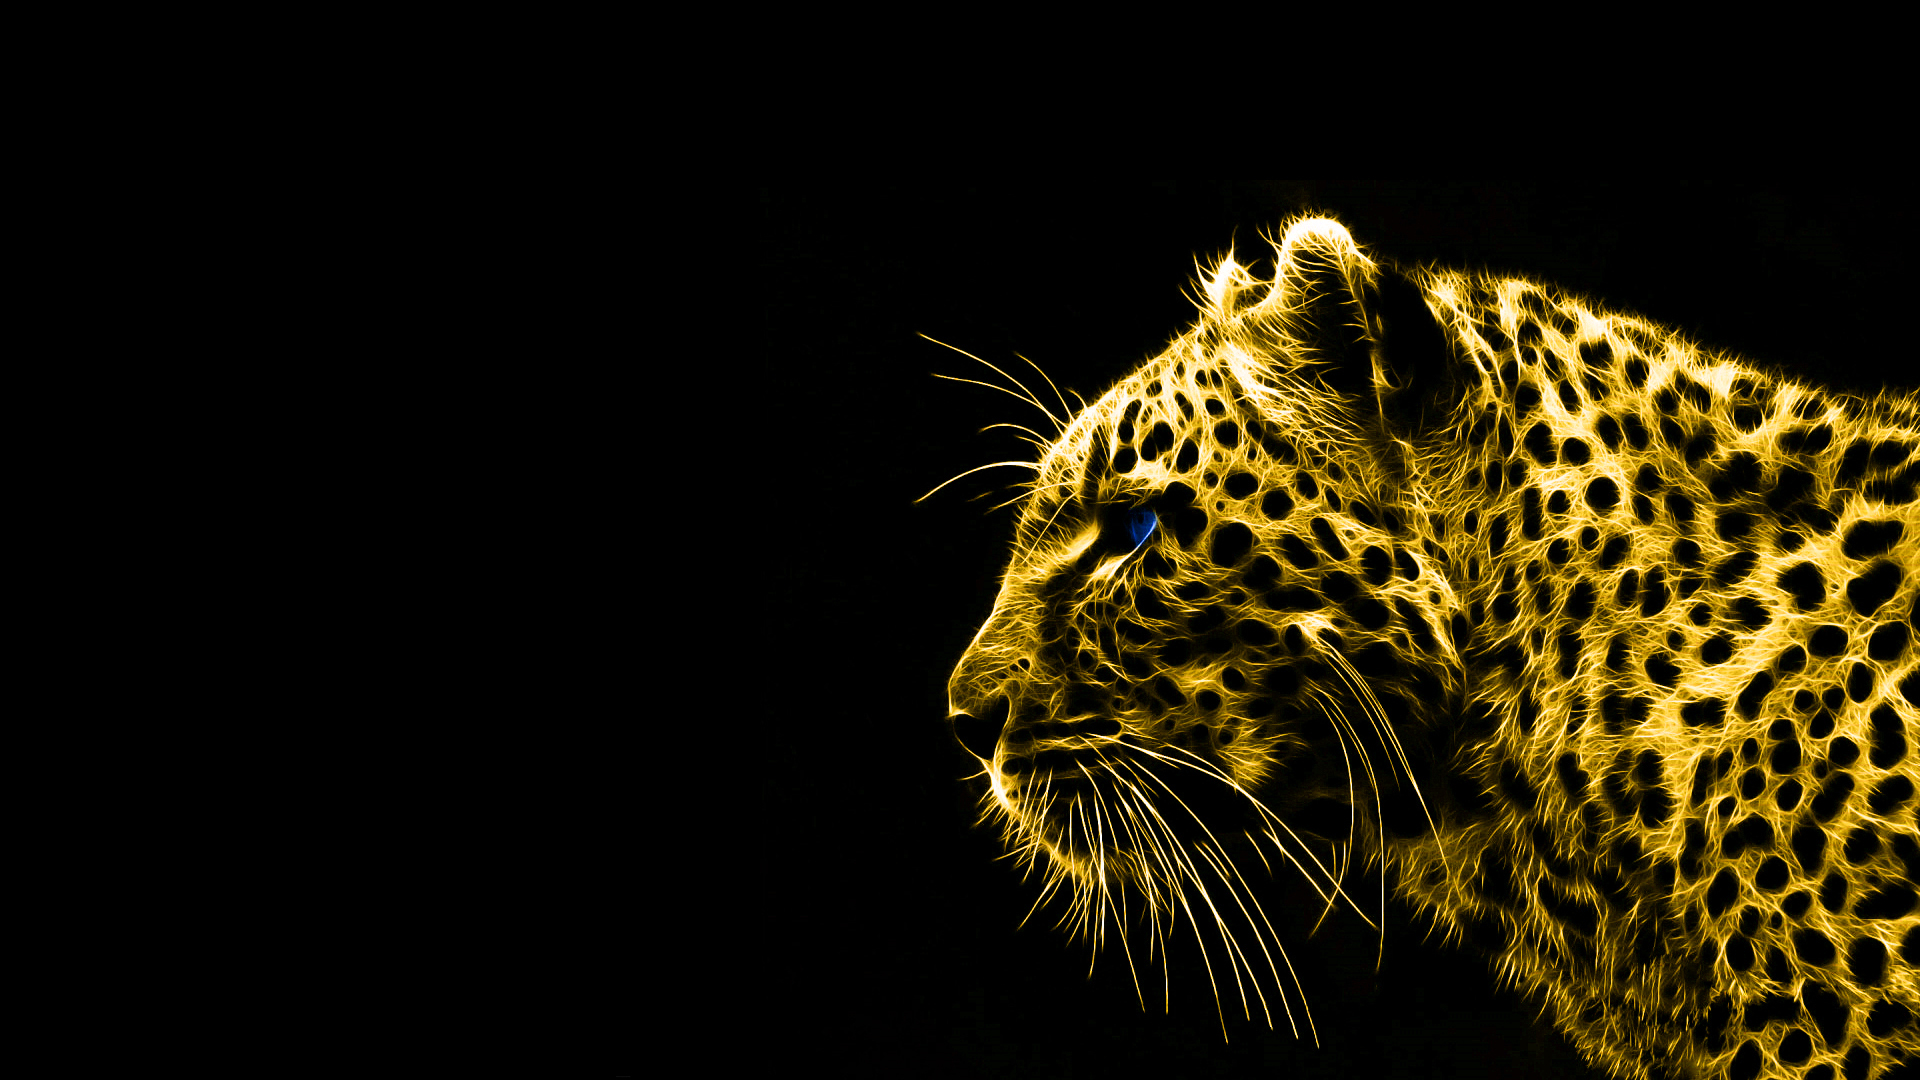 Black Wallpaper on Animals Gold Spirit Leopards Black Background Hd Wallpaper   Wild